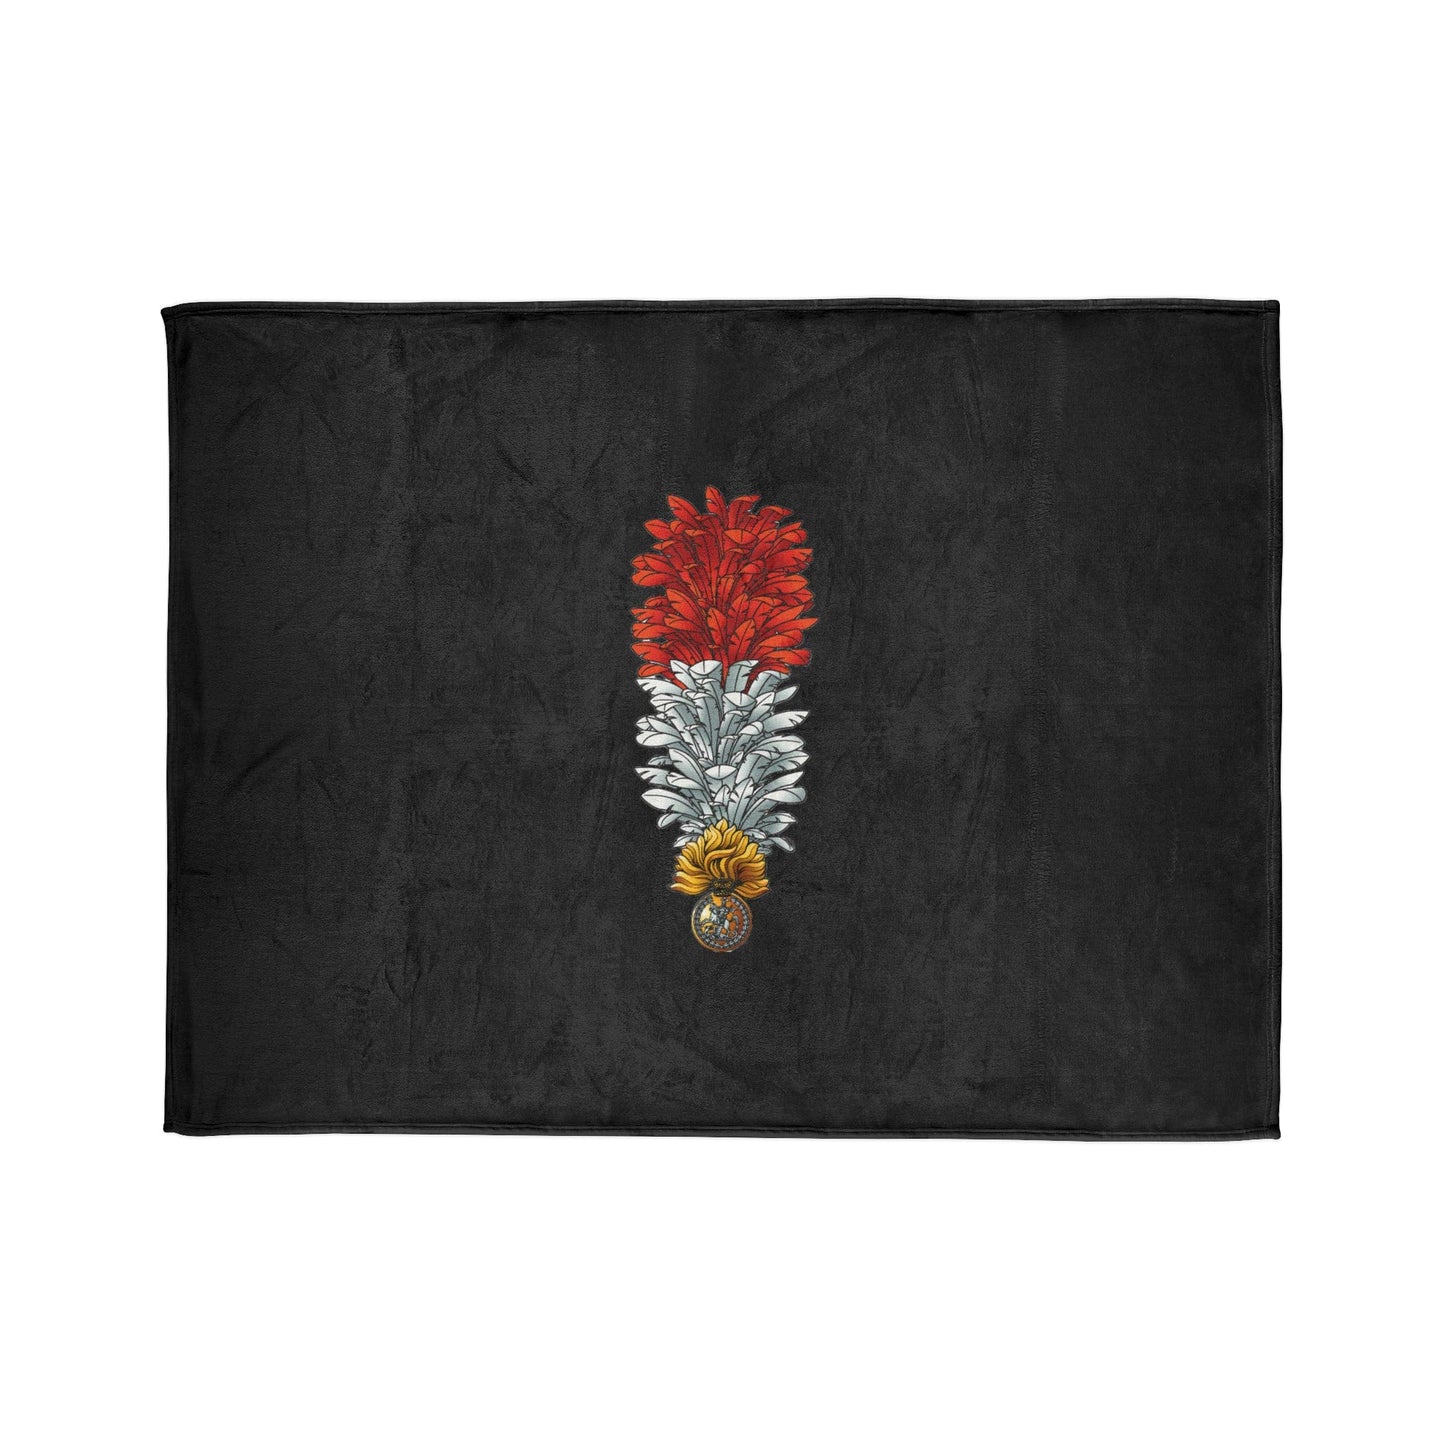 Fleece Blanket Royal Regiment Of Fusiliers Fleece Blanket (Black Background)